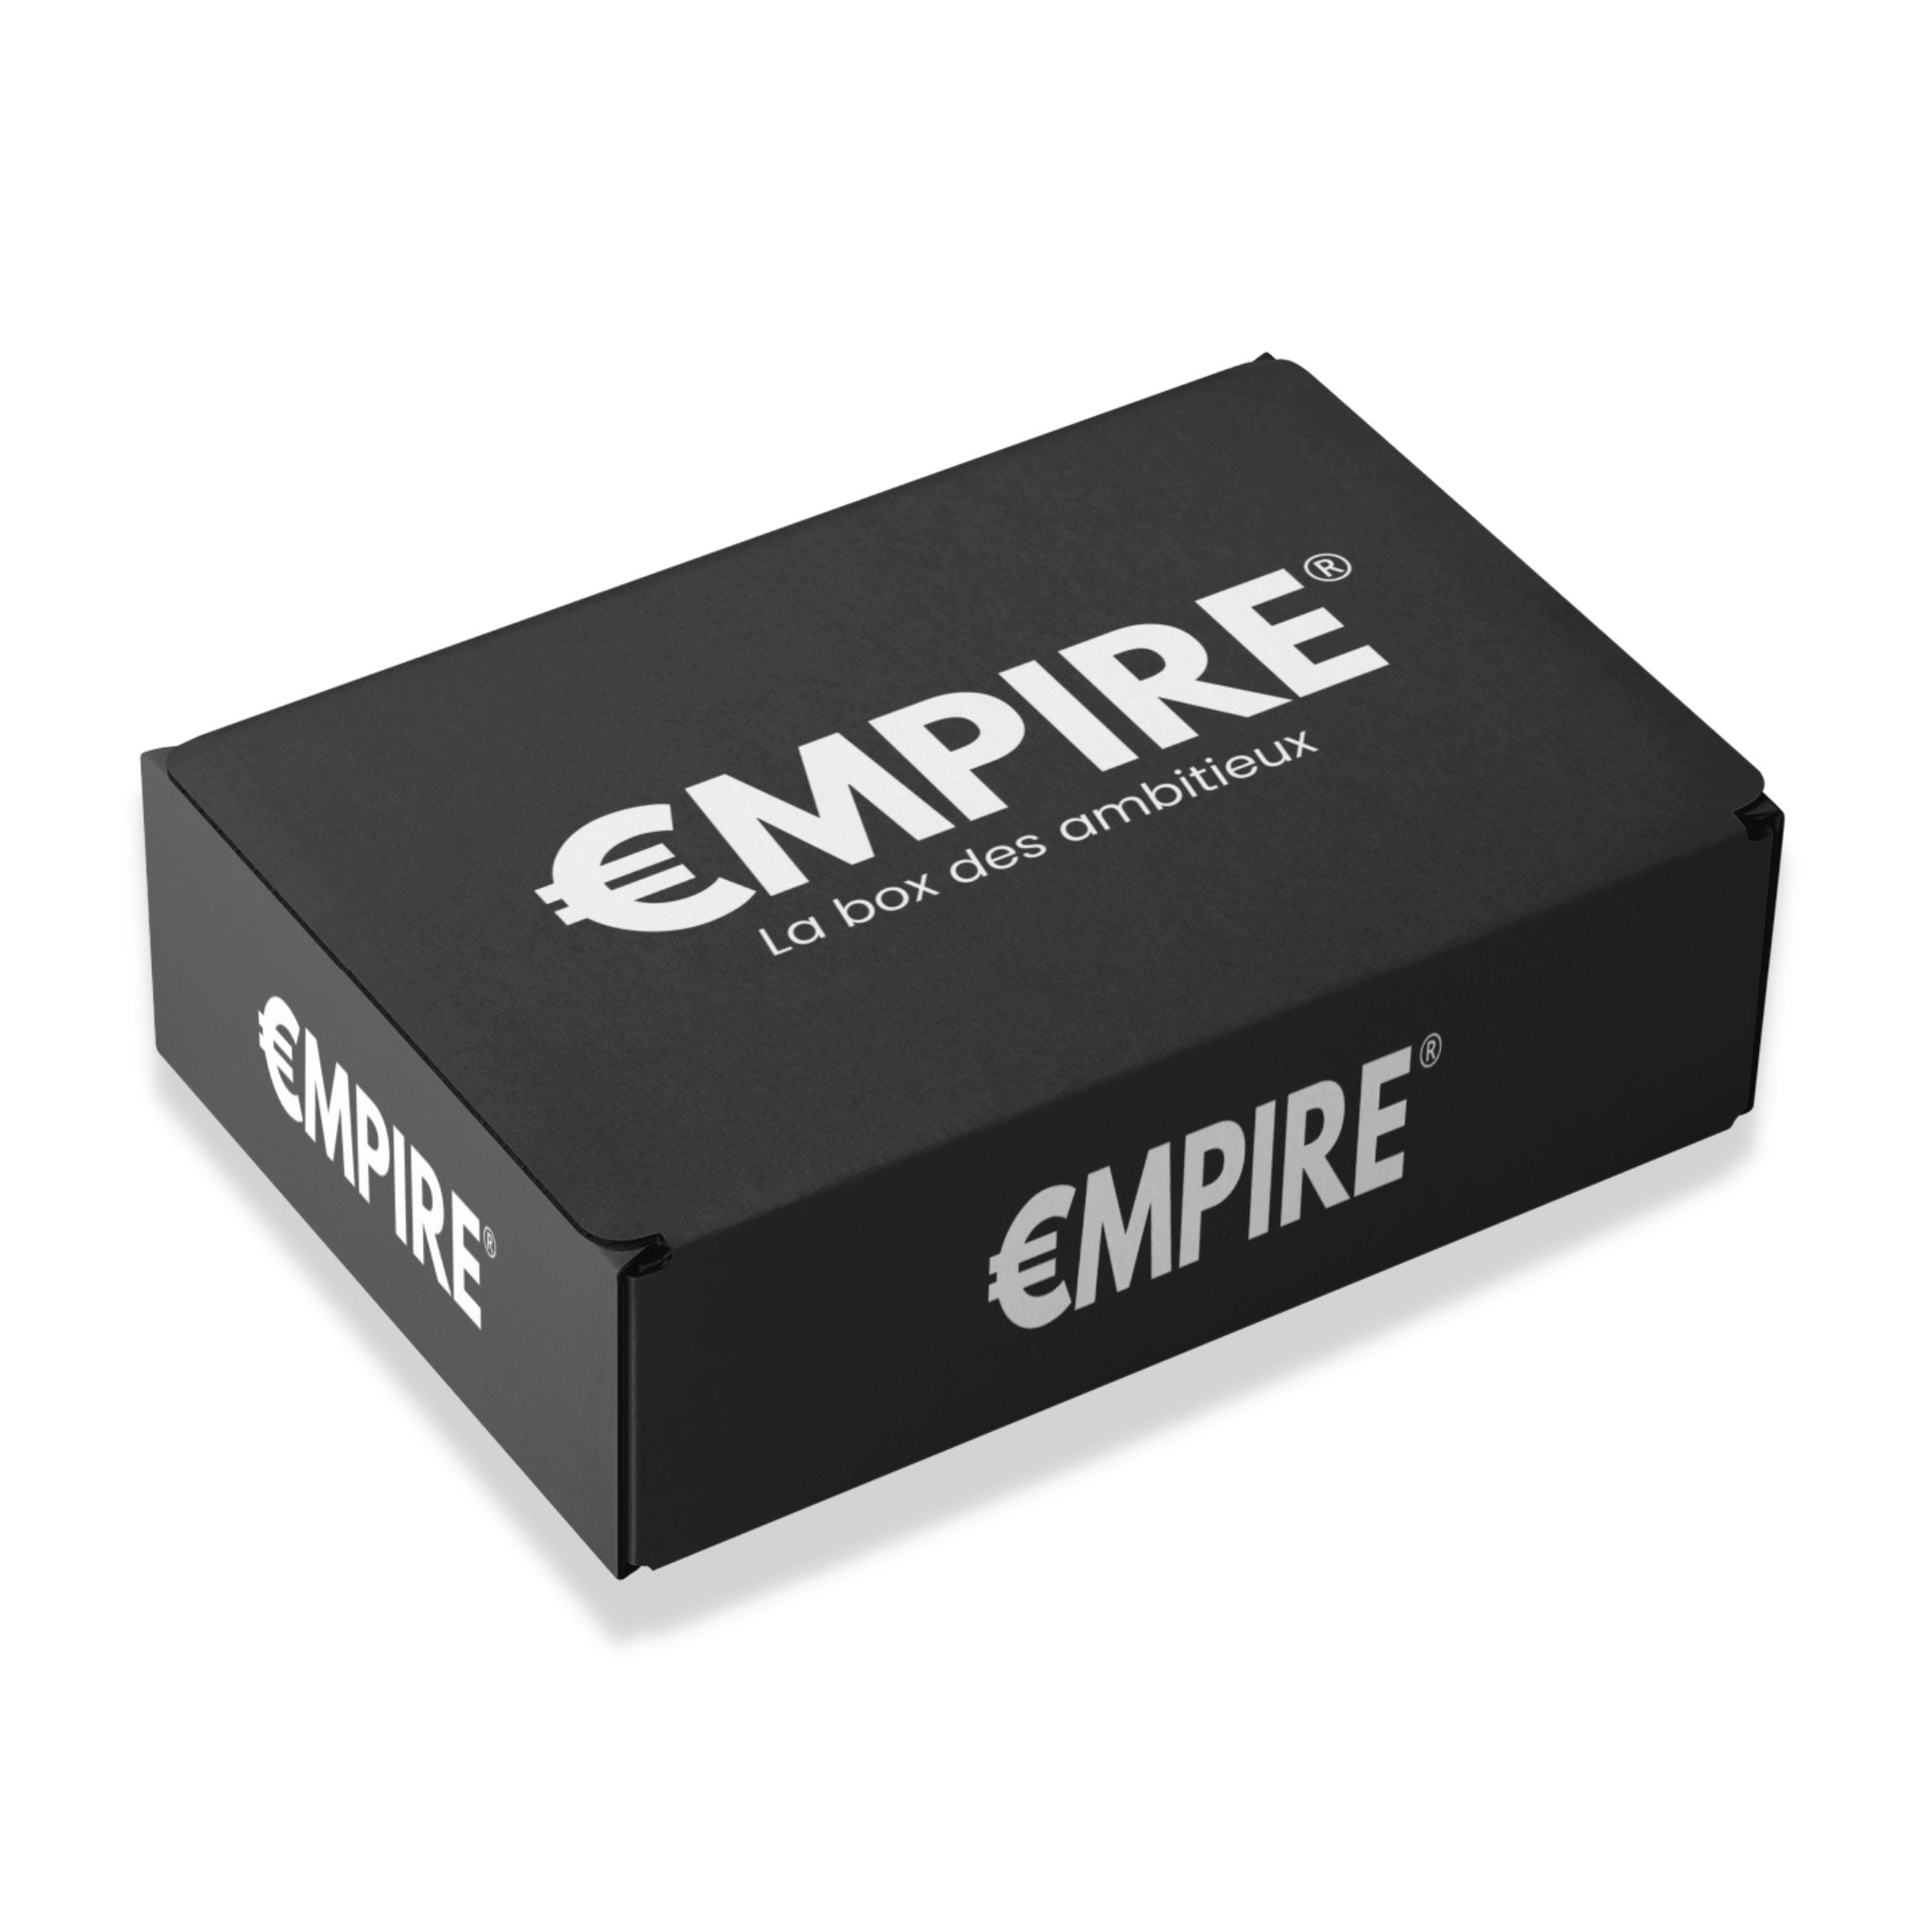 EMPIRE BOX